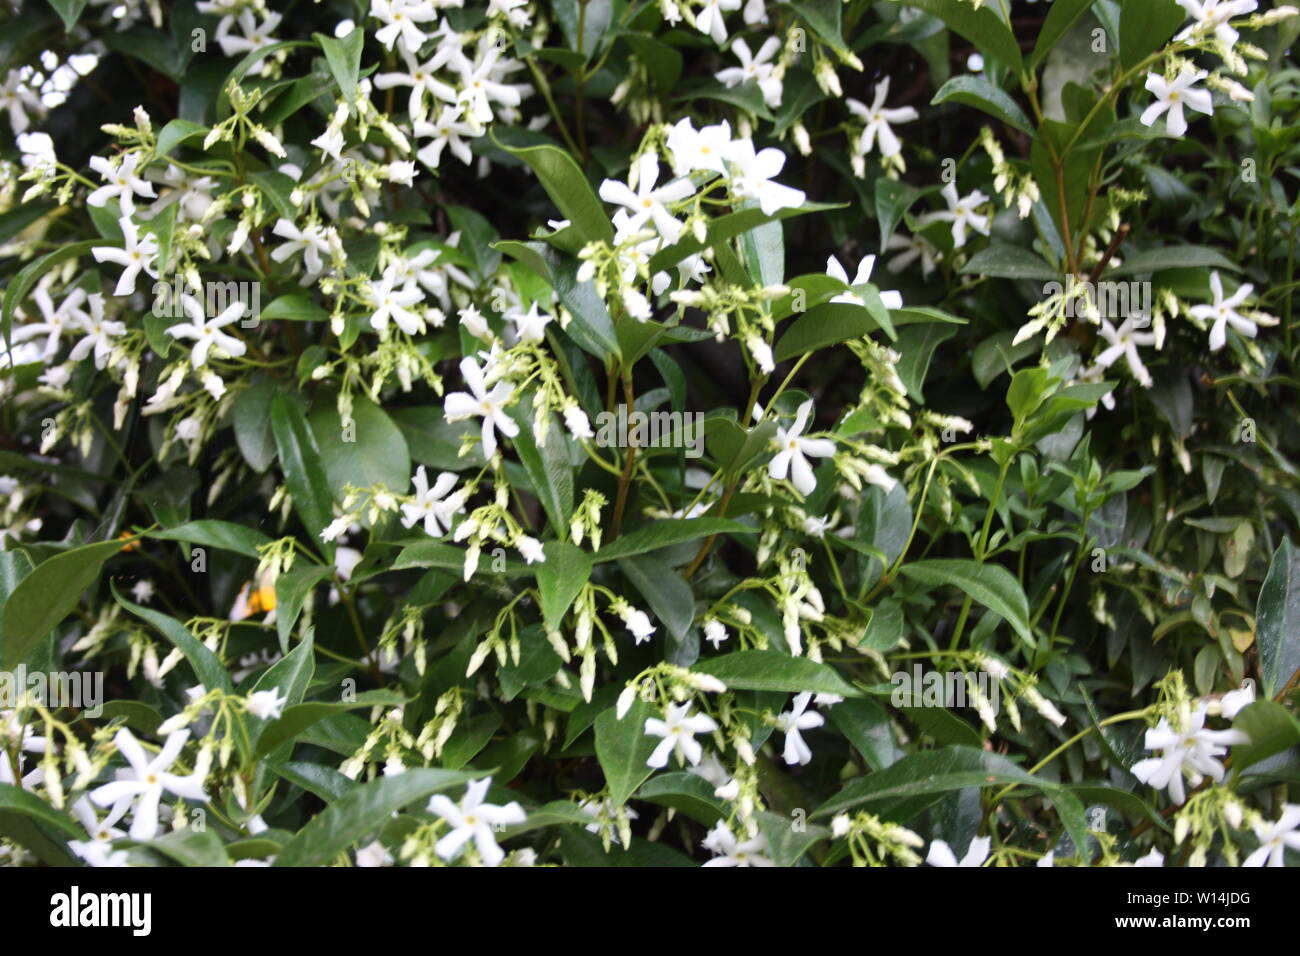 grove or green flowering bush of fragrant white jasmine Stock Photo